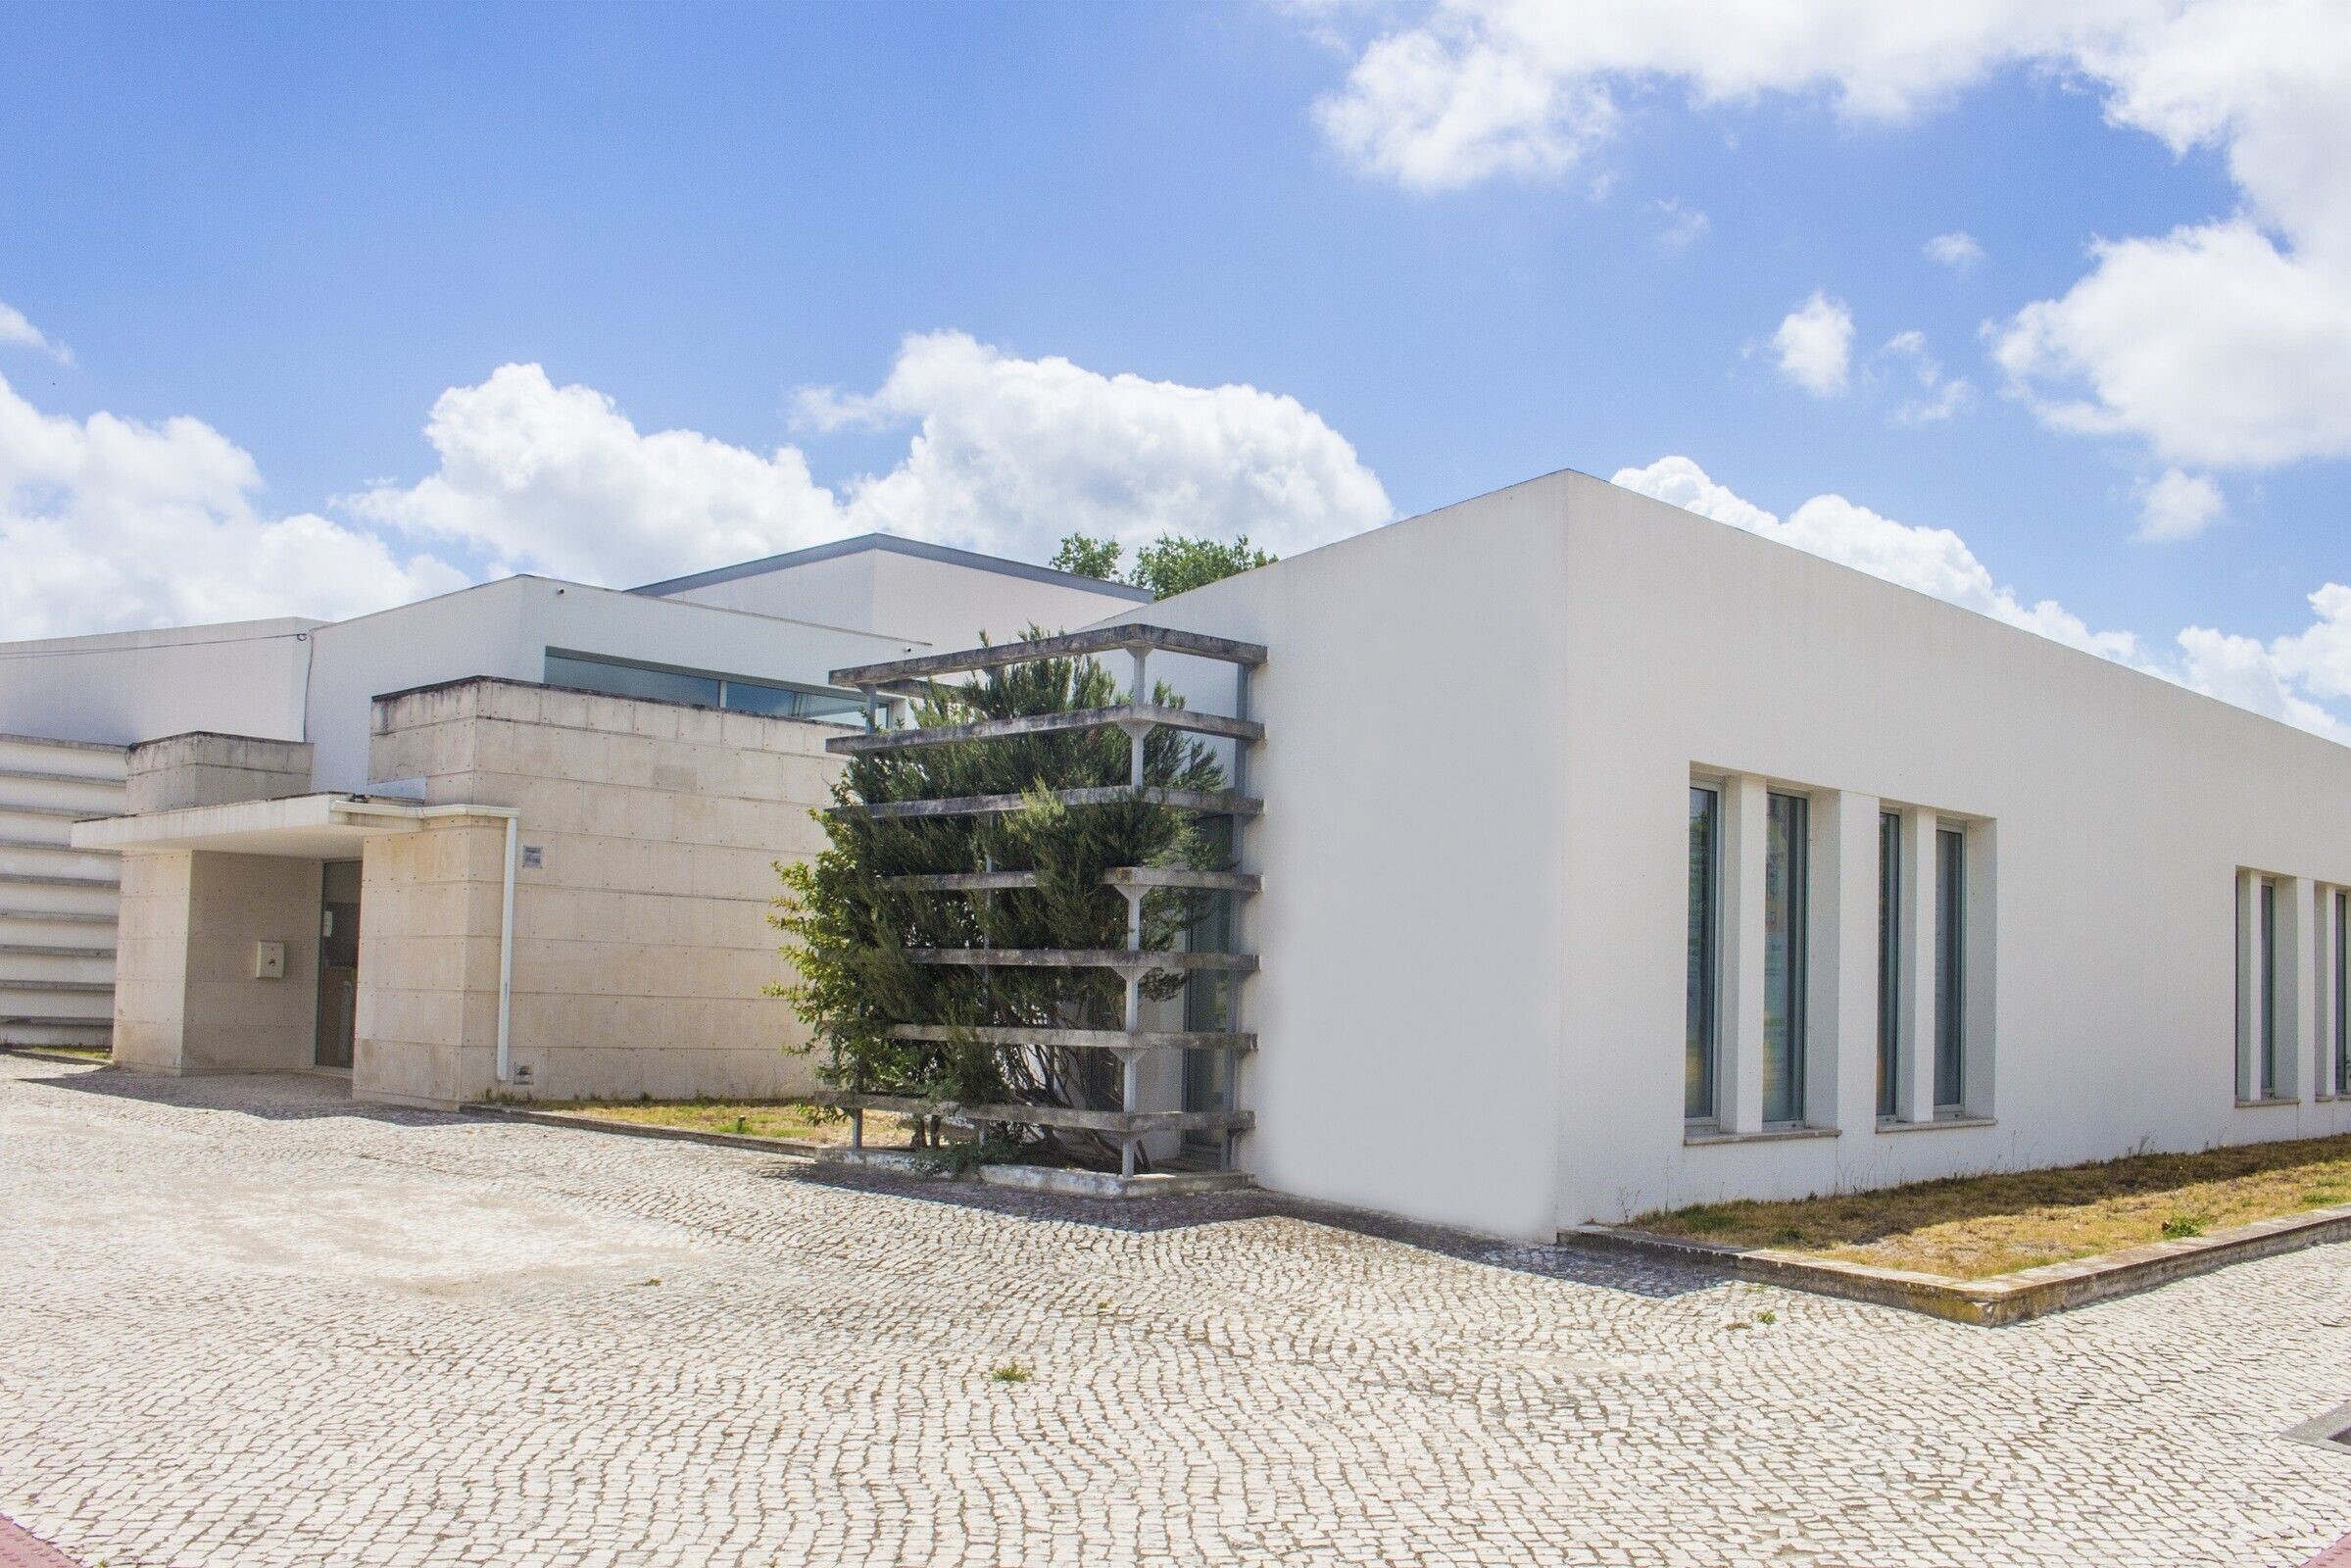 Centro Cultural de Poceirão - adjudicado reforço da eficiência energética